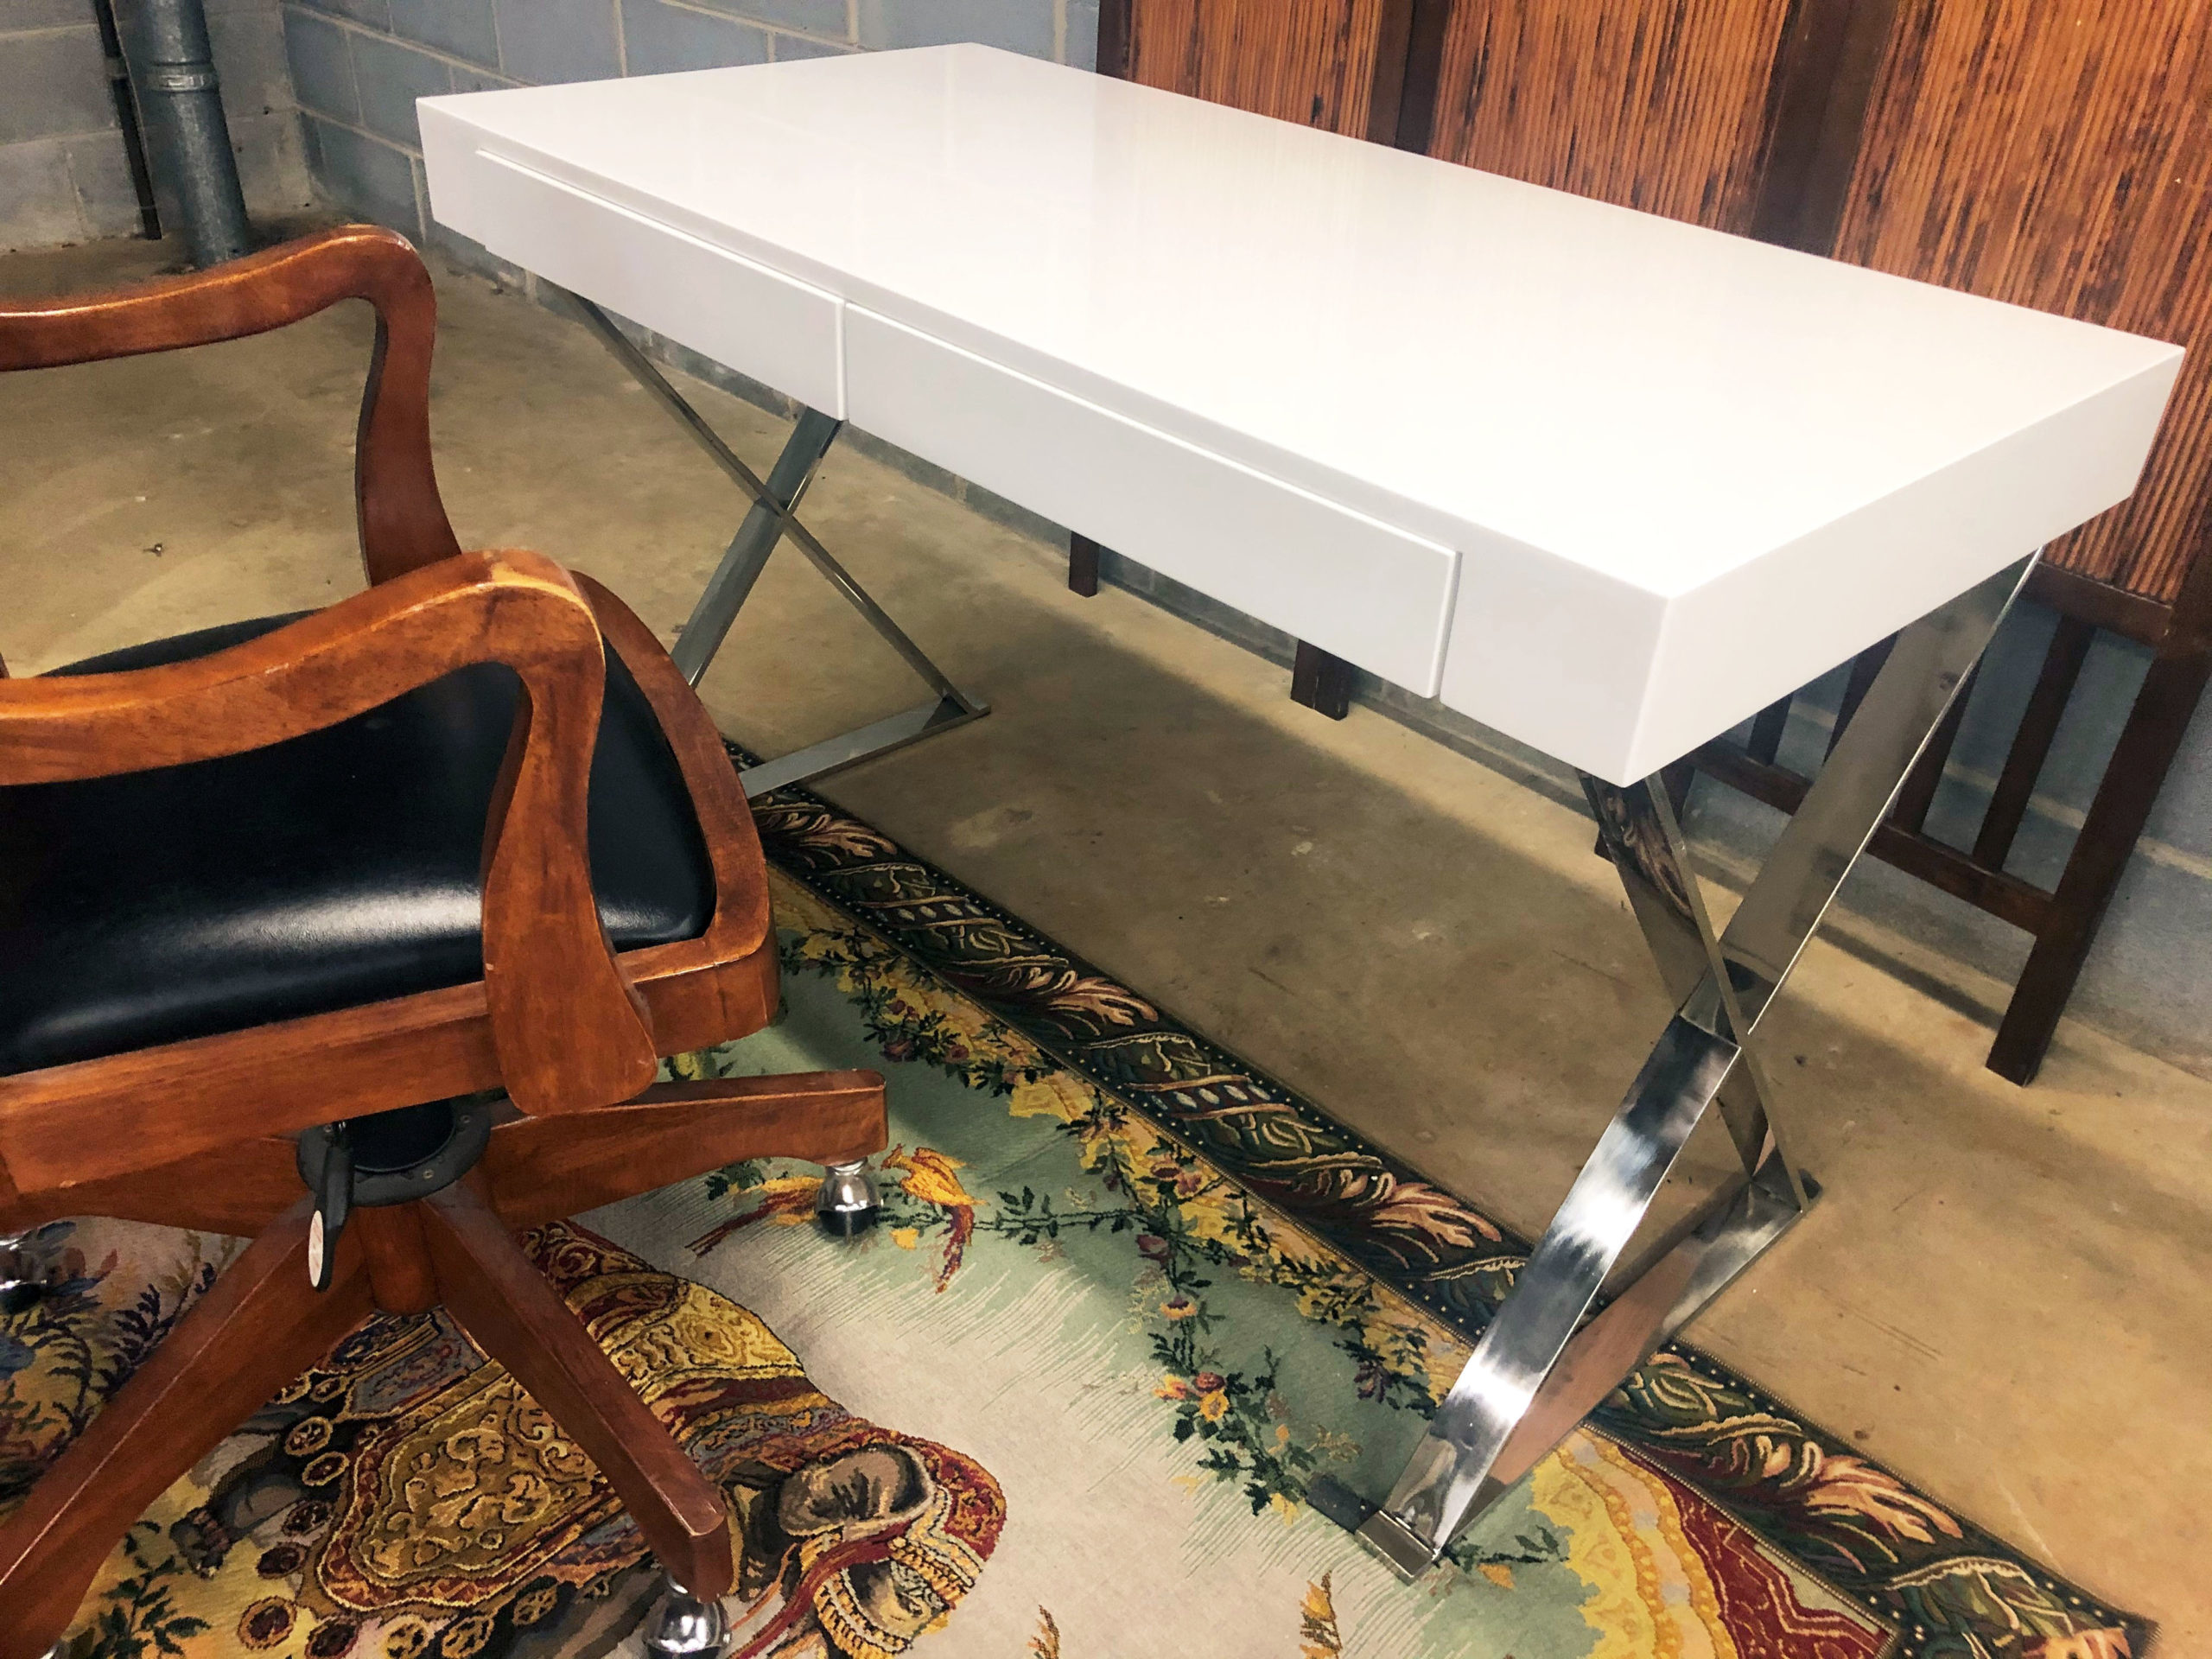 White Lacquer Desk - $85